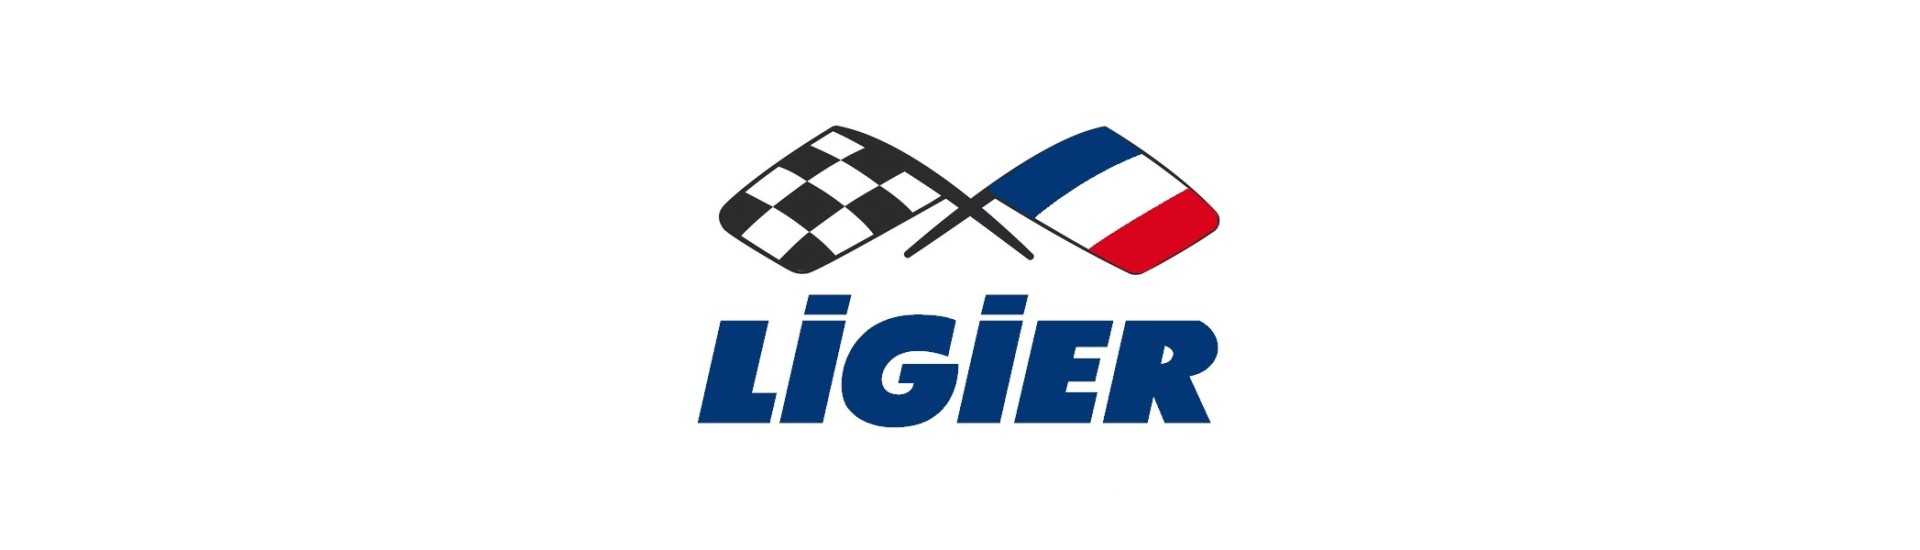 Vidro custódio ao melhor preço do carro sem uma permissão Ligier